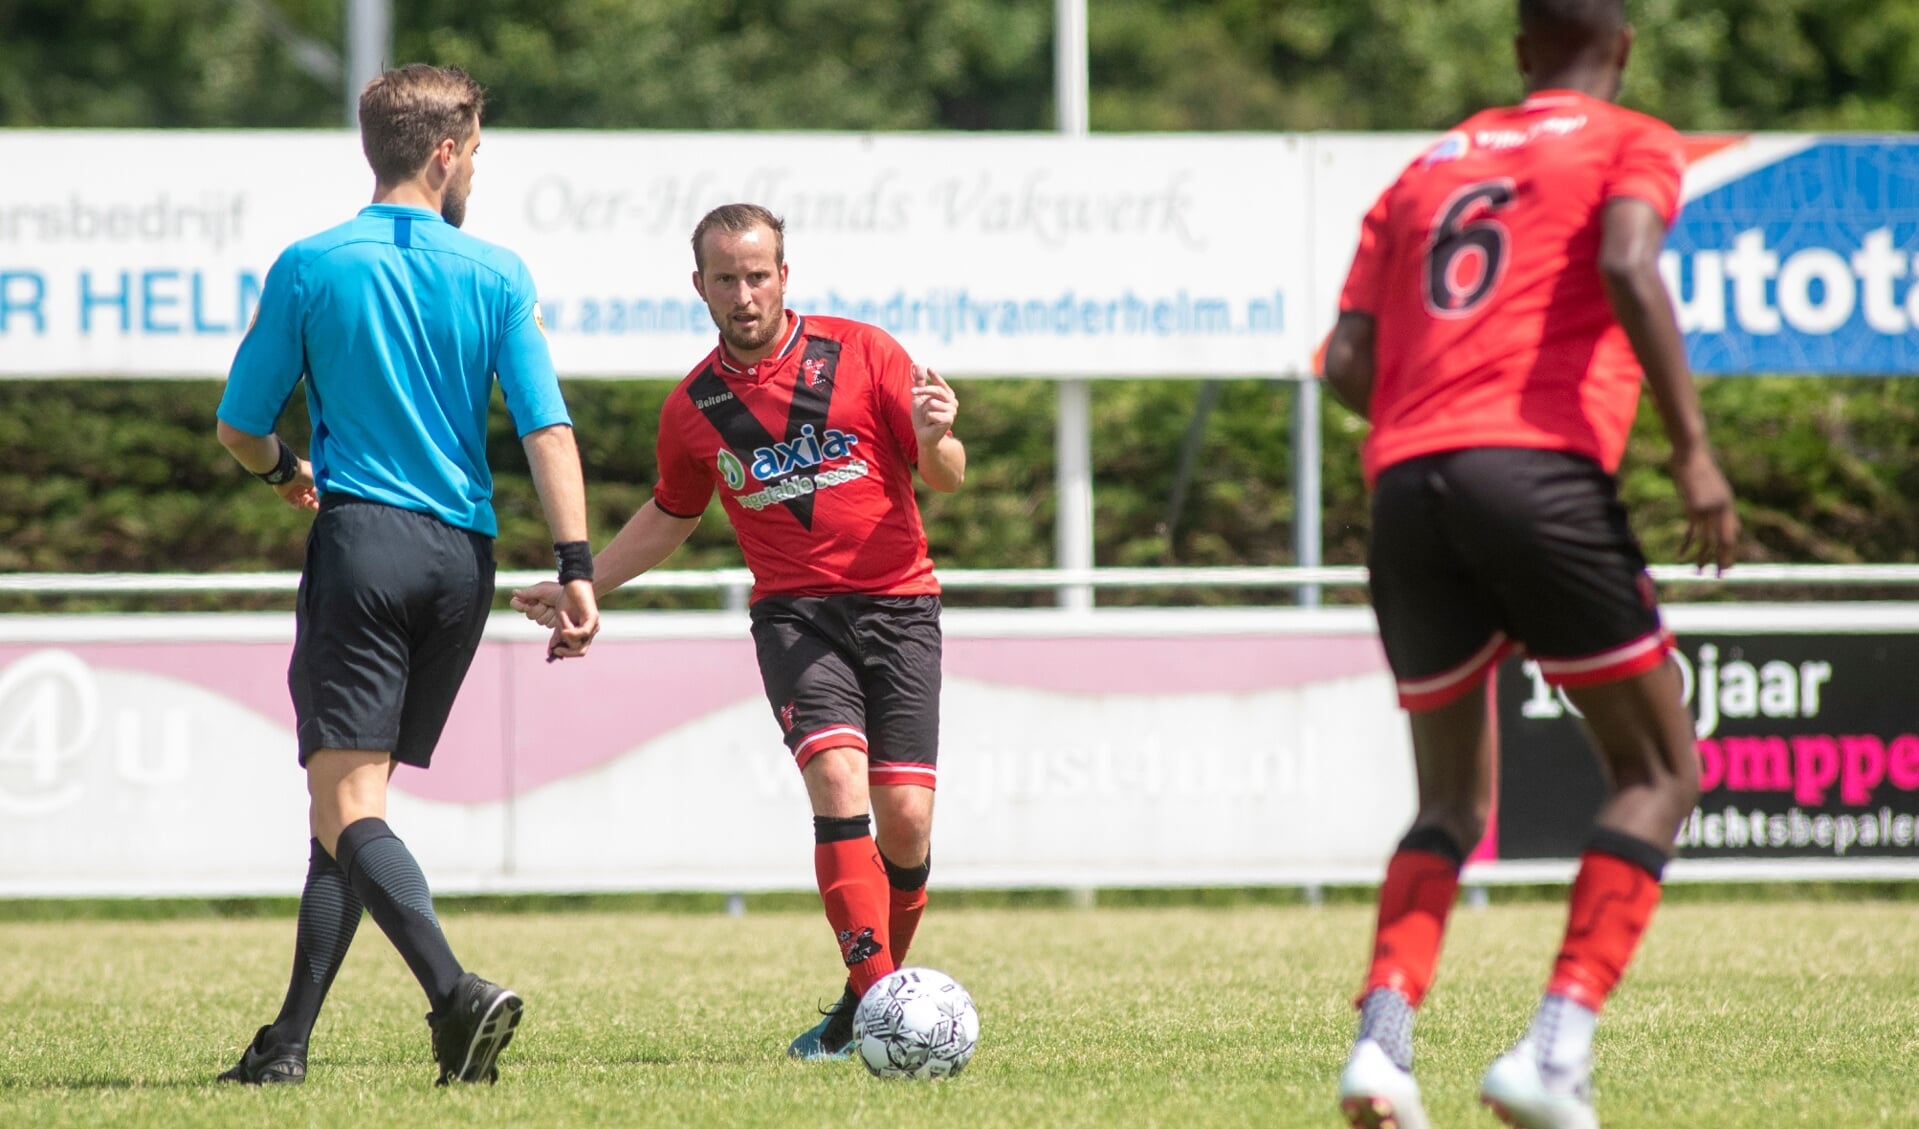 Mitchell Gronsveld beleeft zijn mooiste seizoen in de selectie van Vitesse Delft en maakte zaterdagmiddag een belangrijke goal. 